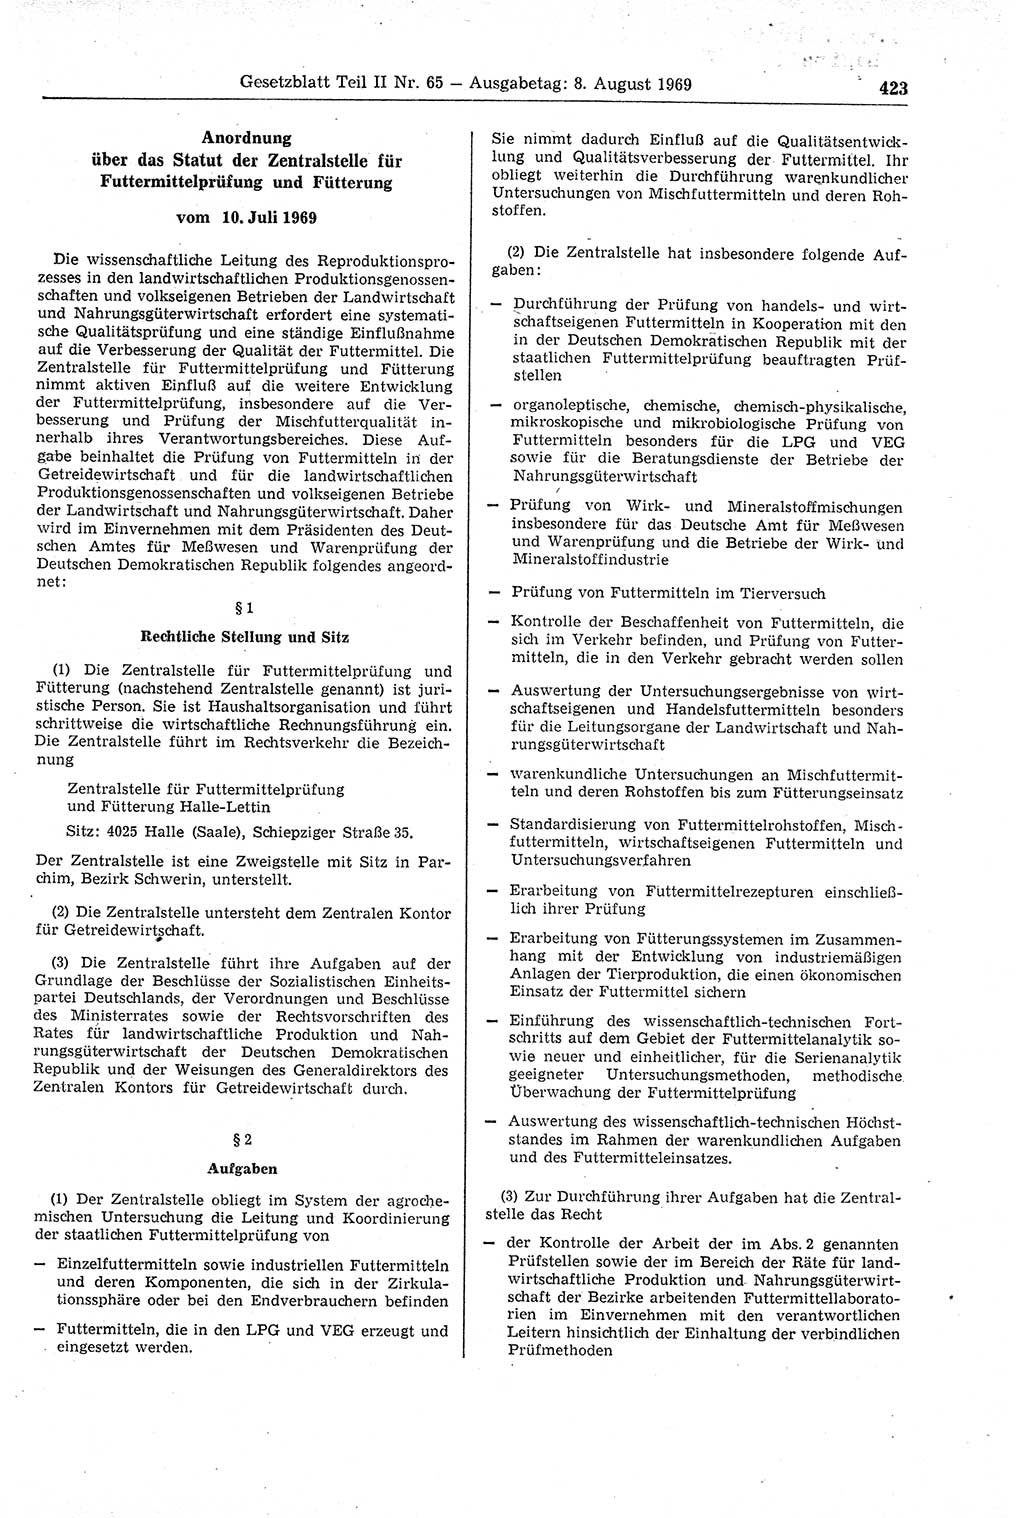 Gesetzblatt (GBl.) der Deutschen Demokratischen Republik (DDR) Teil ⅠⅠ 1969, Seite 423 (GBl. DDR ⅠⅠ 1969, S. 423)